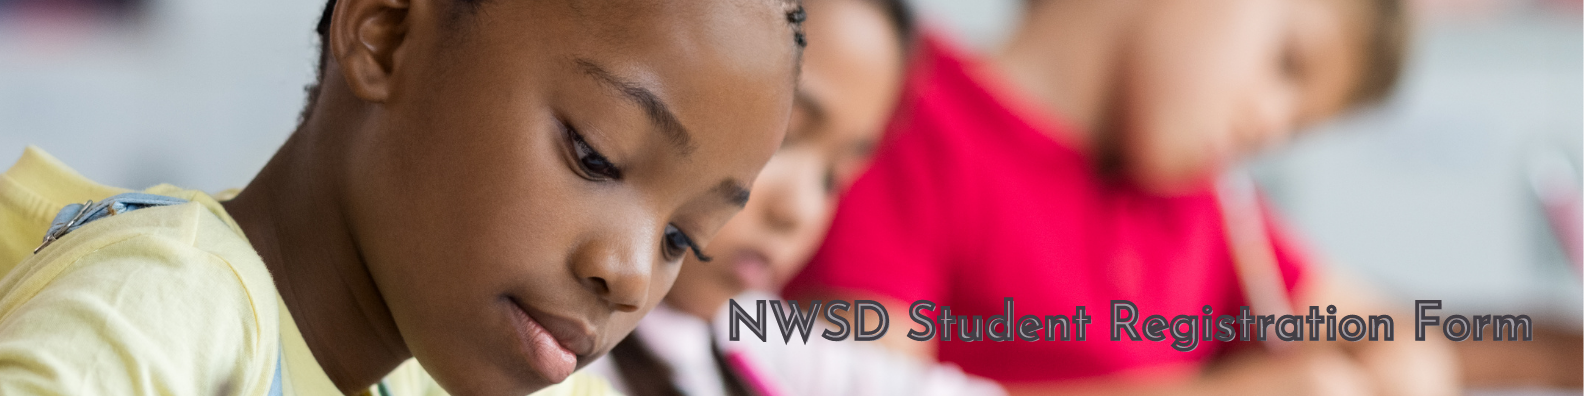 NWSD Student Registration Form.png